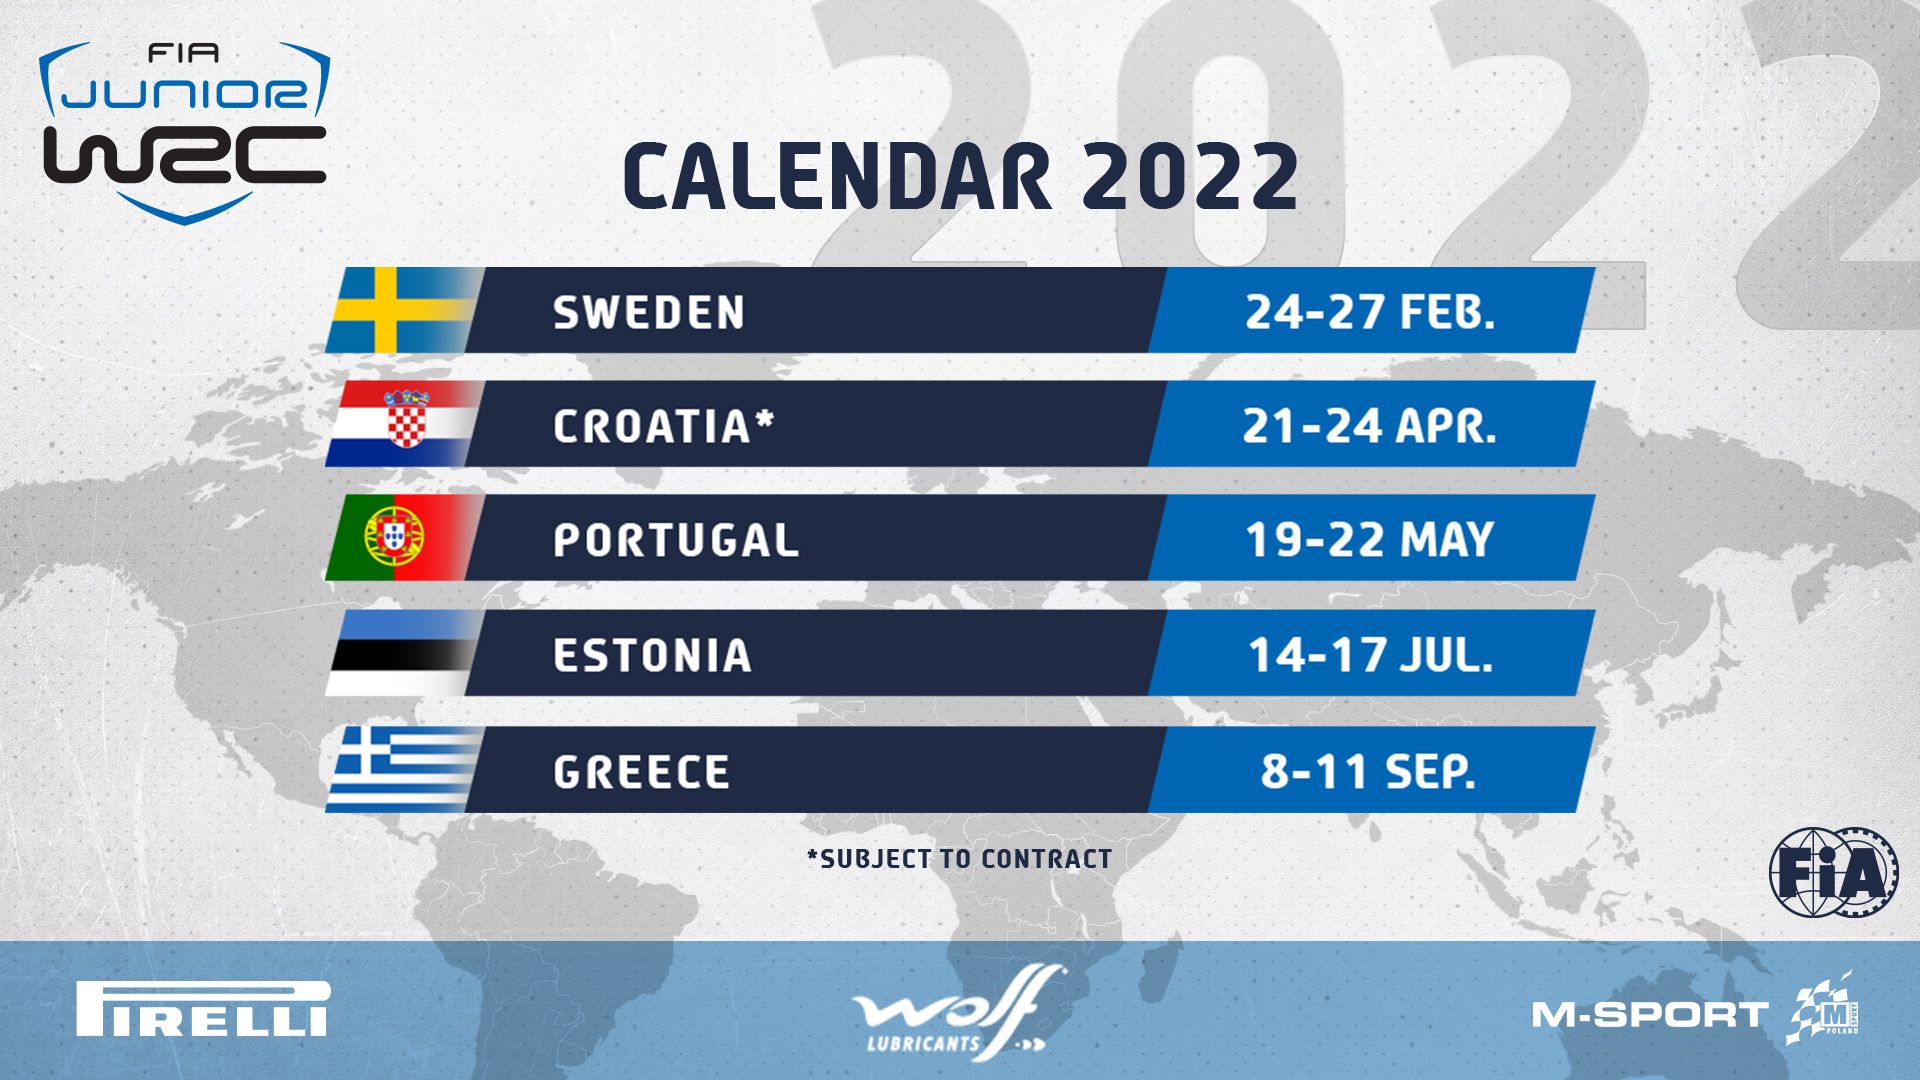 JWRC 2022 Calendar